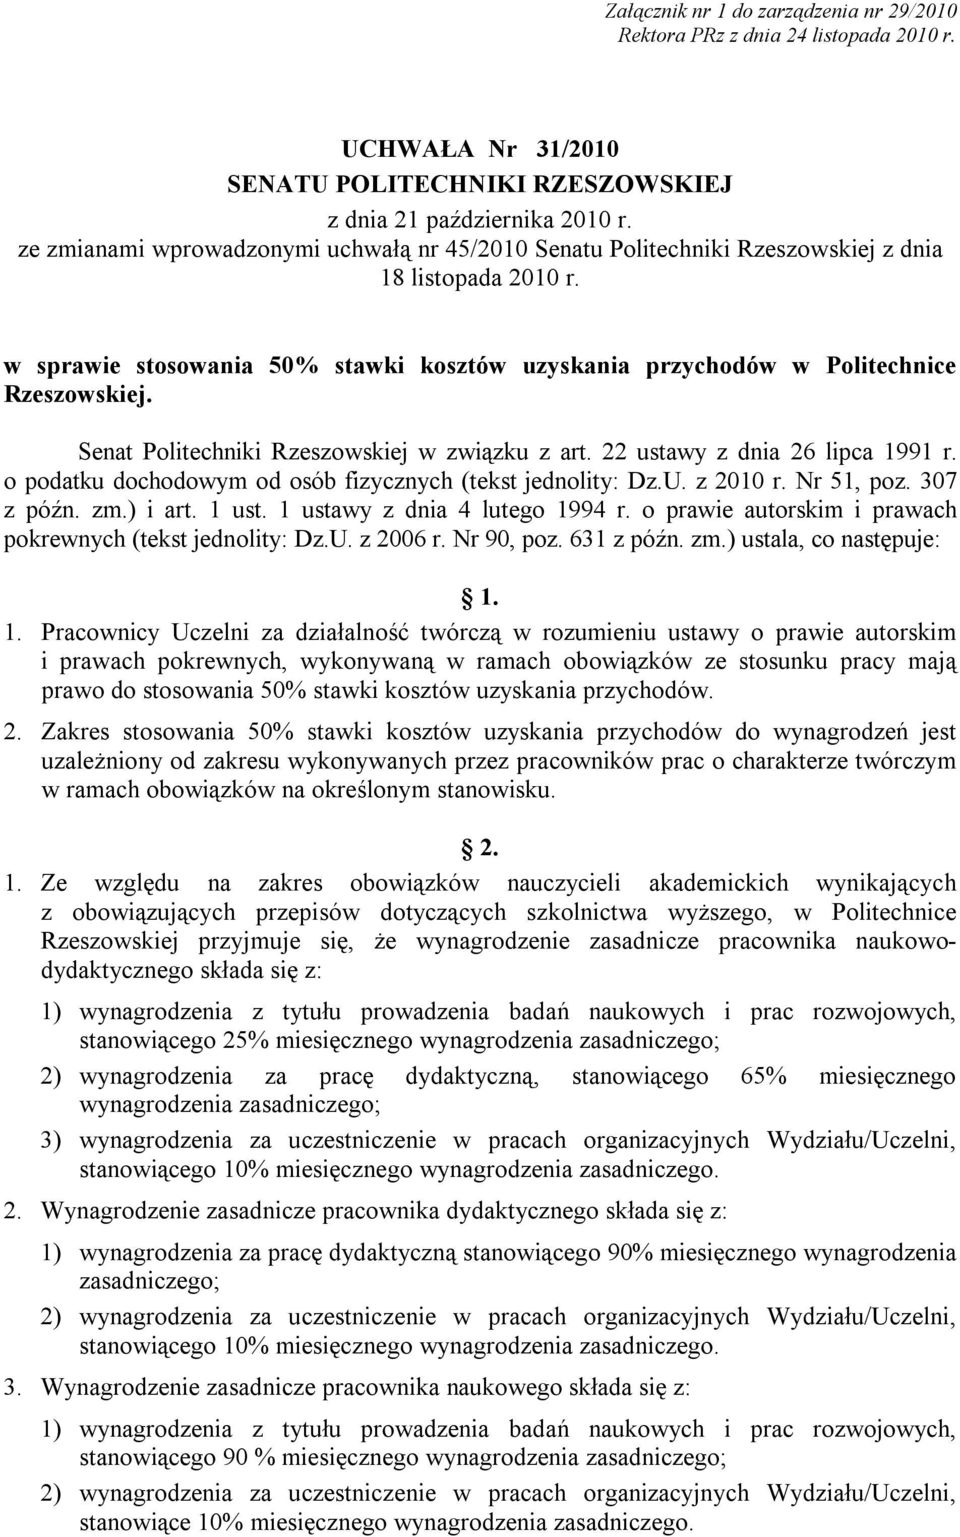 Senat Politechniki Rzeszowskiej w związku z art. 22 ustawy z dnia 26 lipca 1991 r. o podatku dochodowym od osób fizycznych (tekst jednolity: Dz.U. z 2010 r. Nr 51, poz. 307 z późn. zm.) i art. 1 ust.